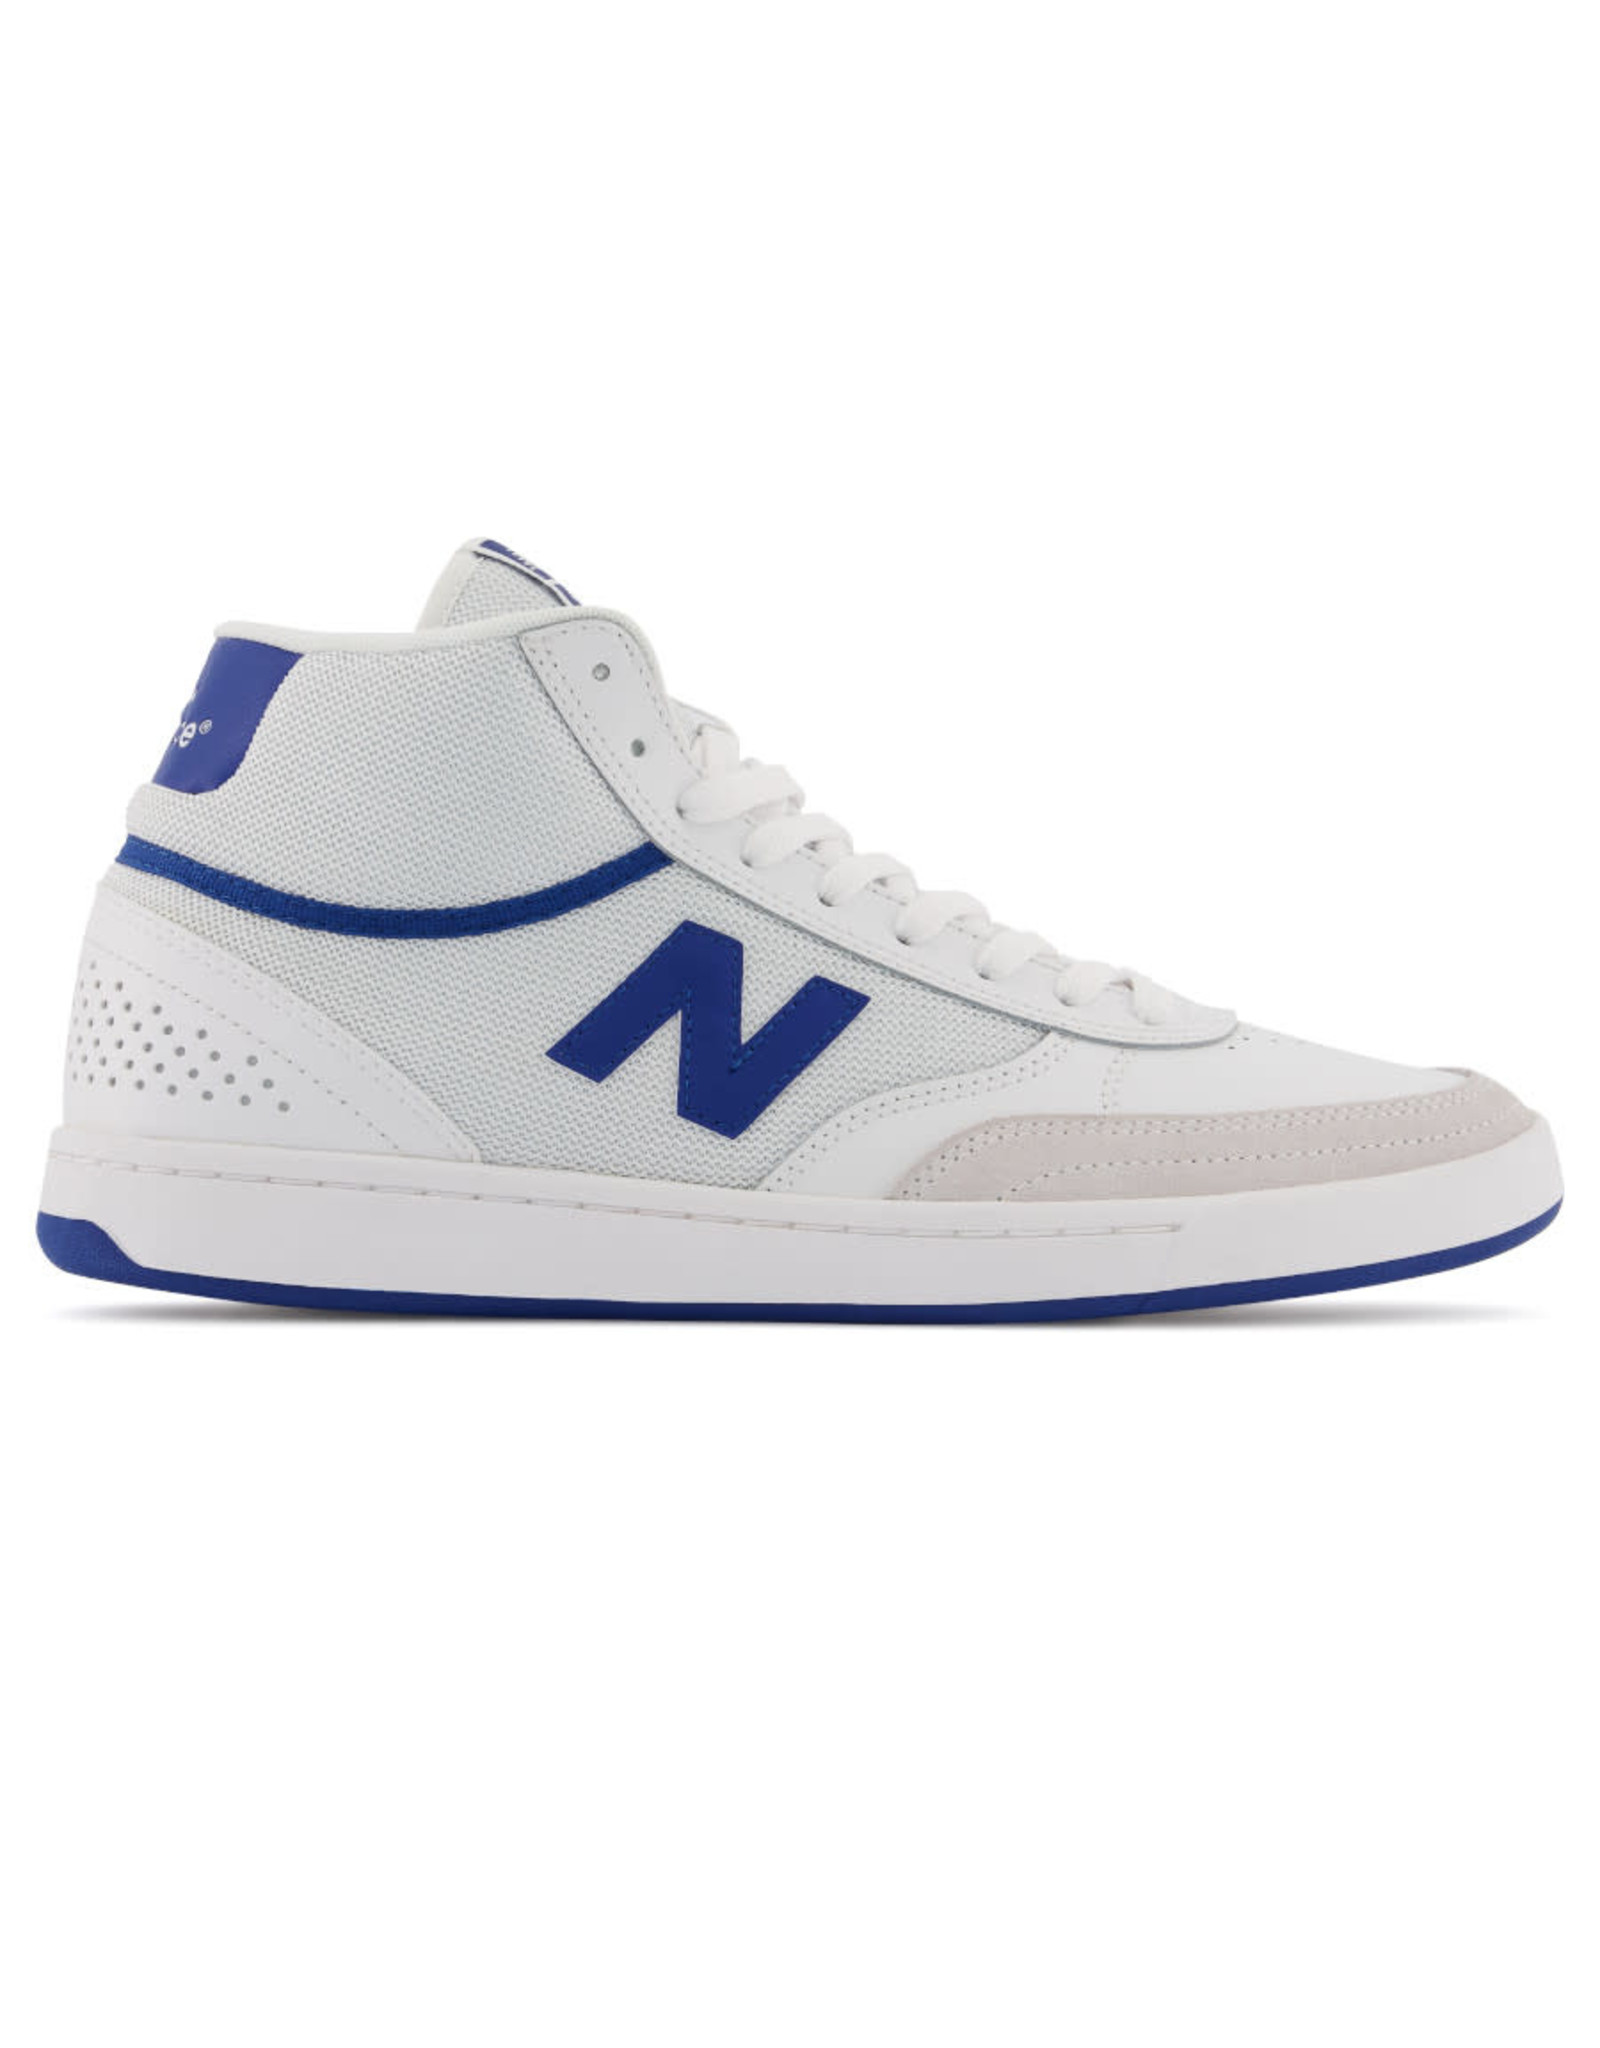 New Balance Numeric New Balance Numeric Shoe 440 High (White/Blue)